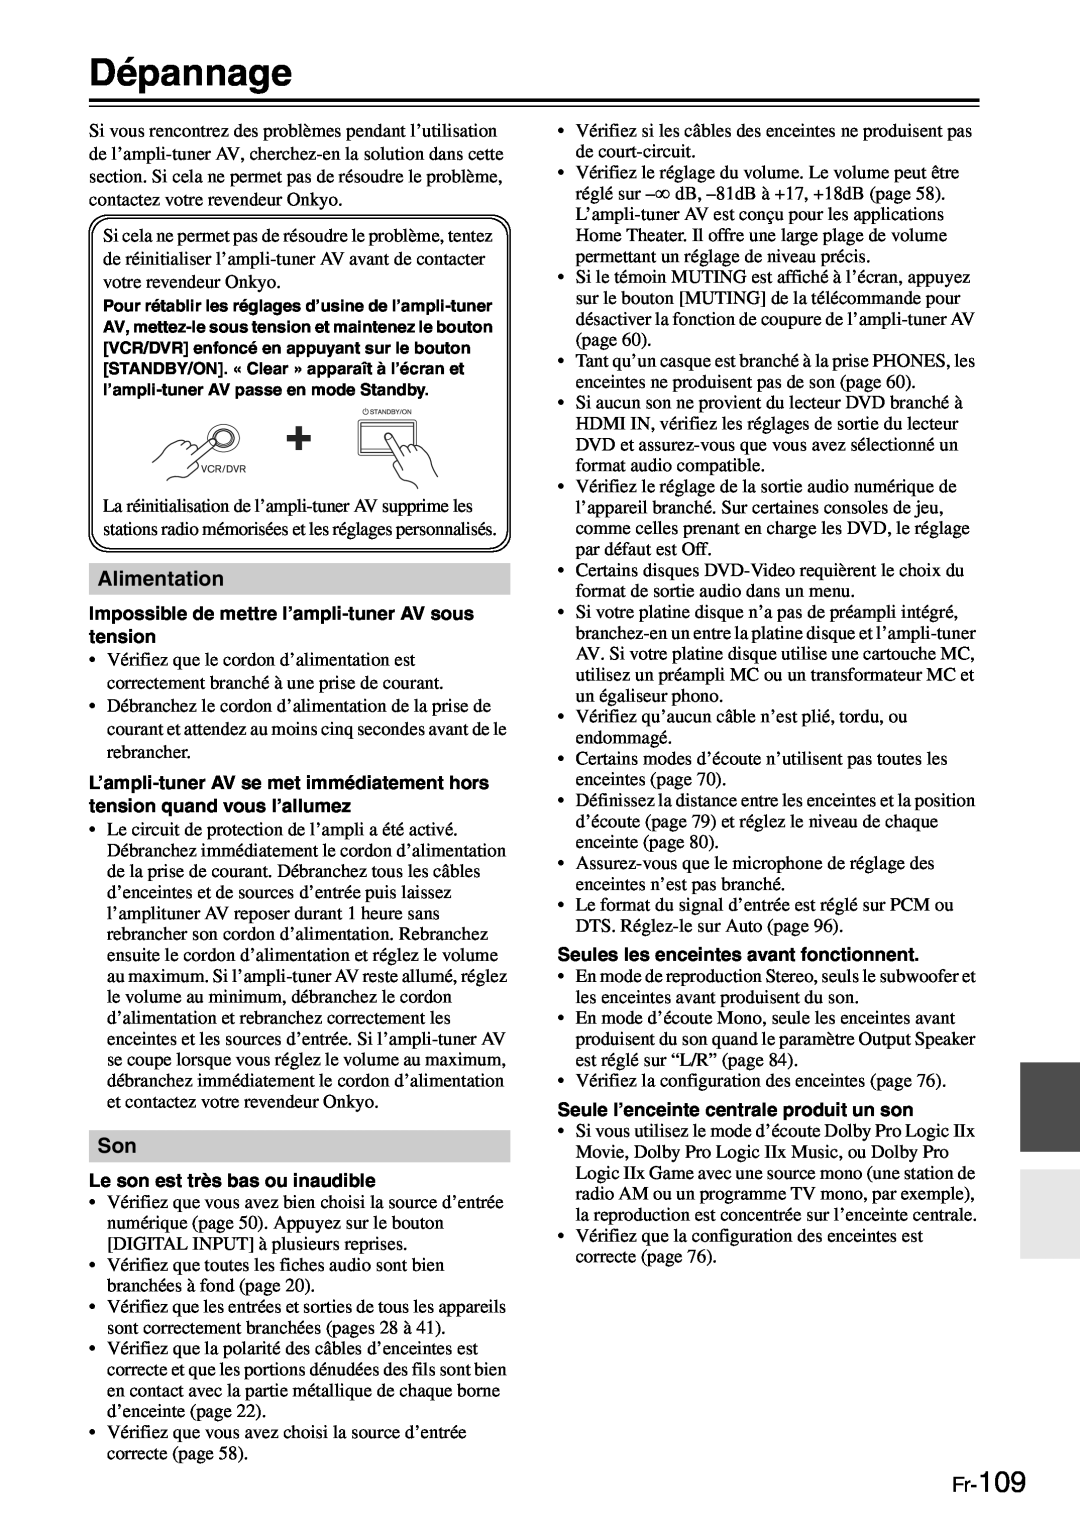 Onkyo TX-SR705 manual Dépannage, Alimentation, Fr-109 